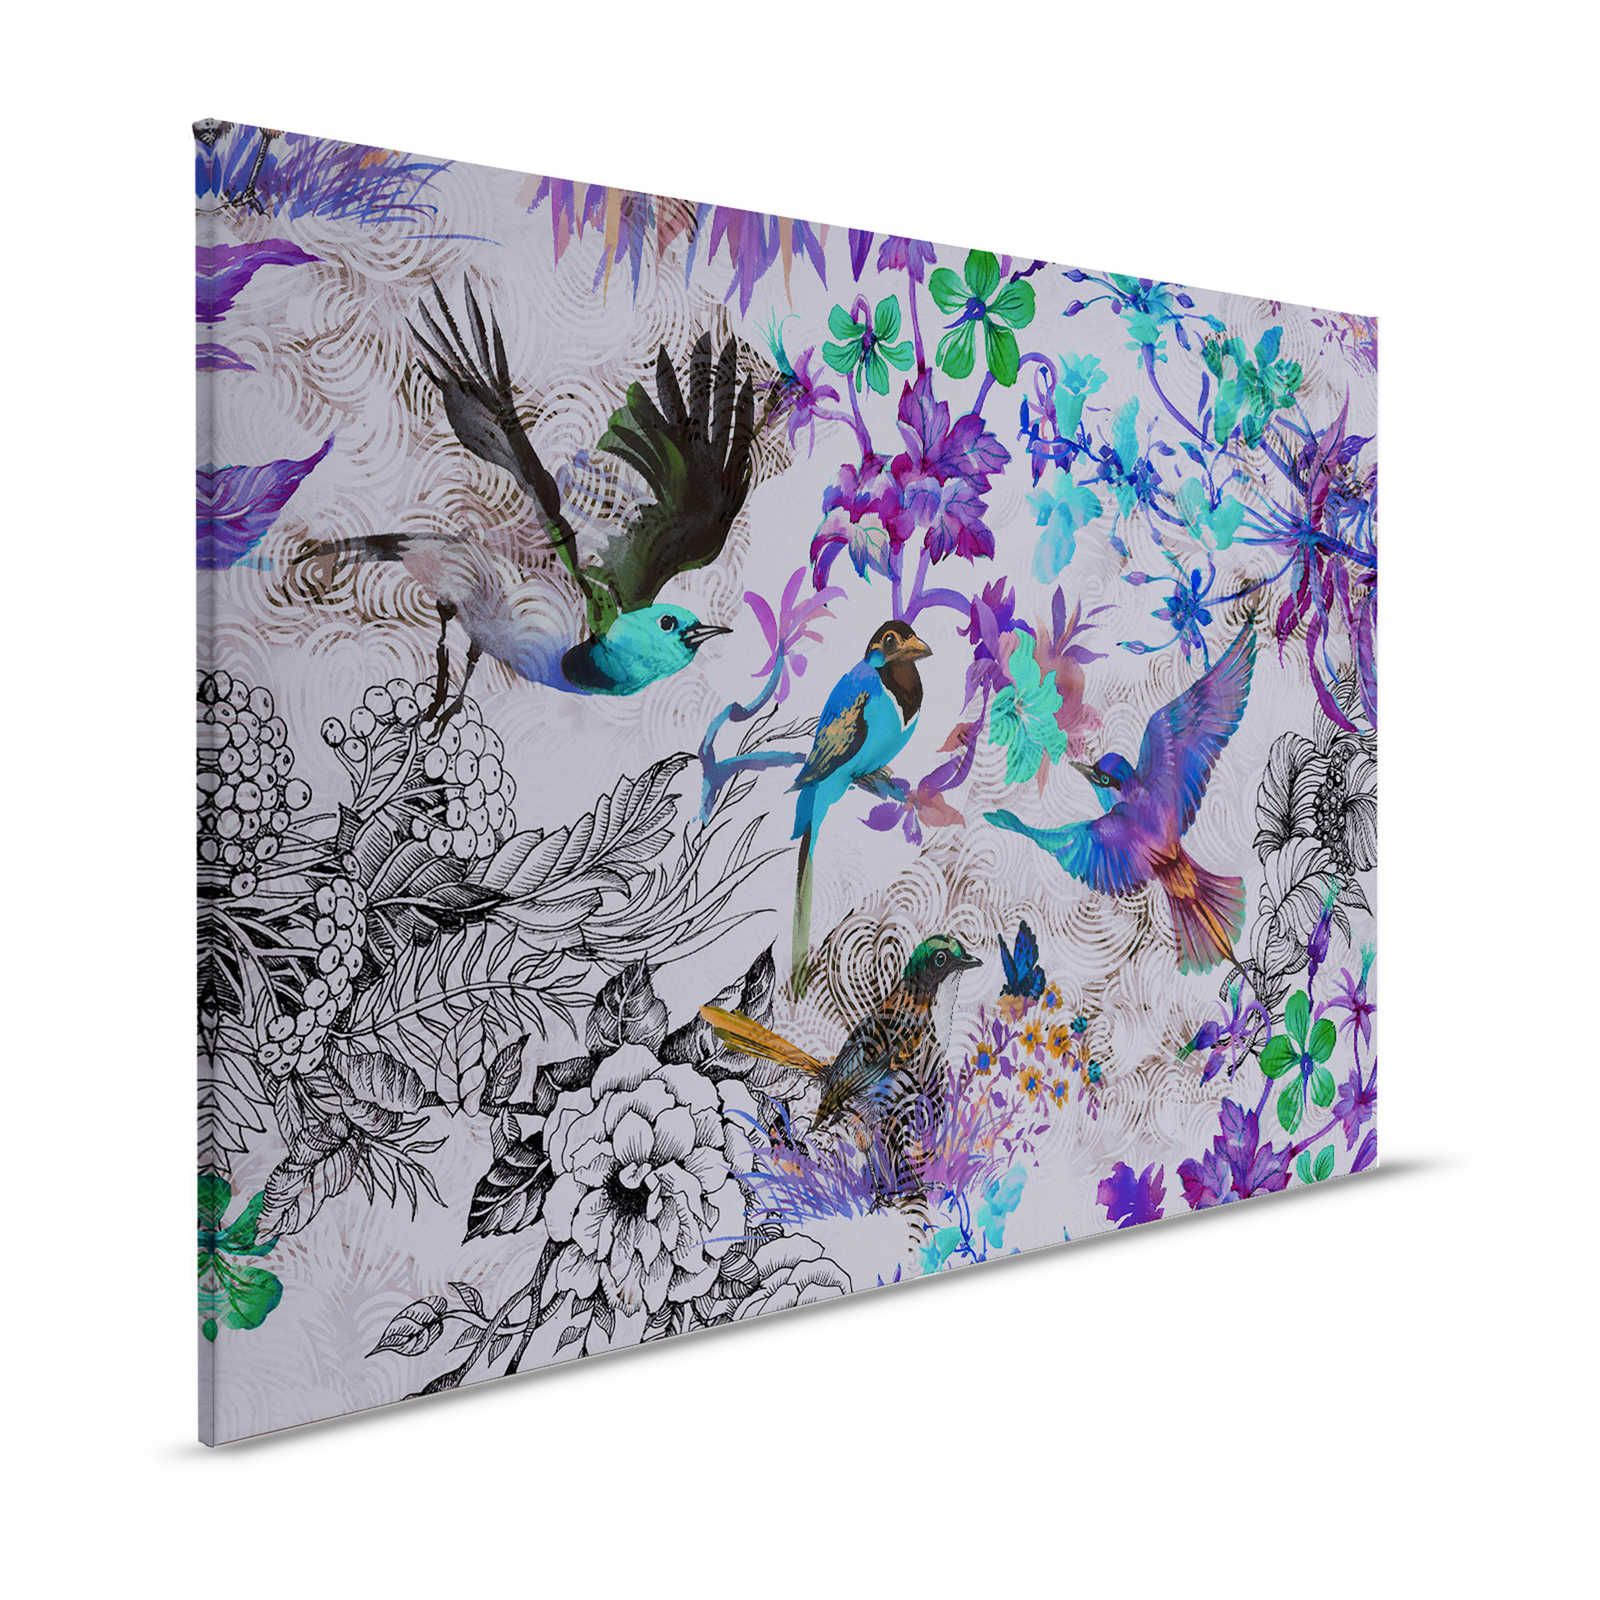 Violettes Leinwandbild mit Blumen & Vögeln – 1,20 m x 0,80 m
